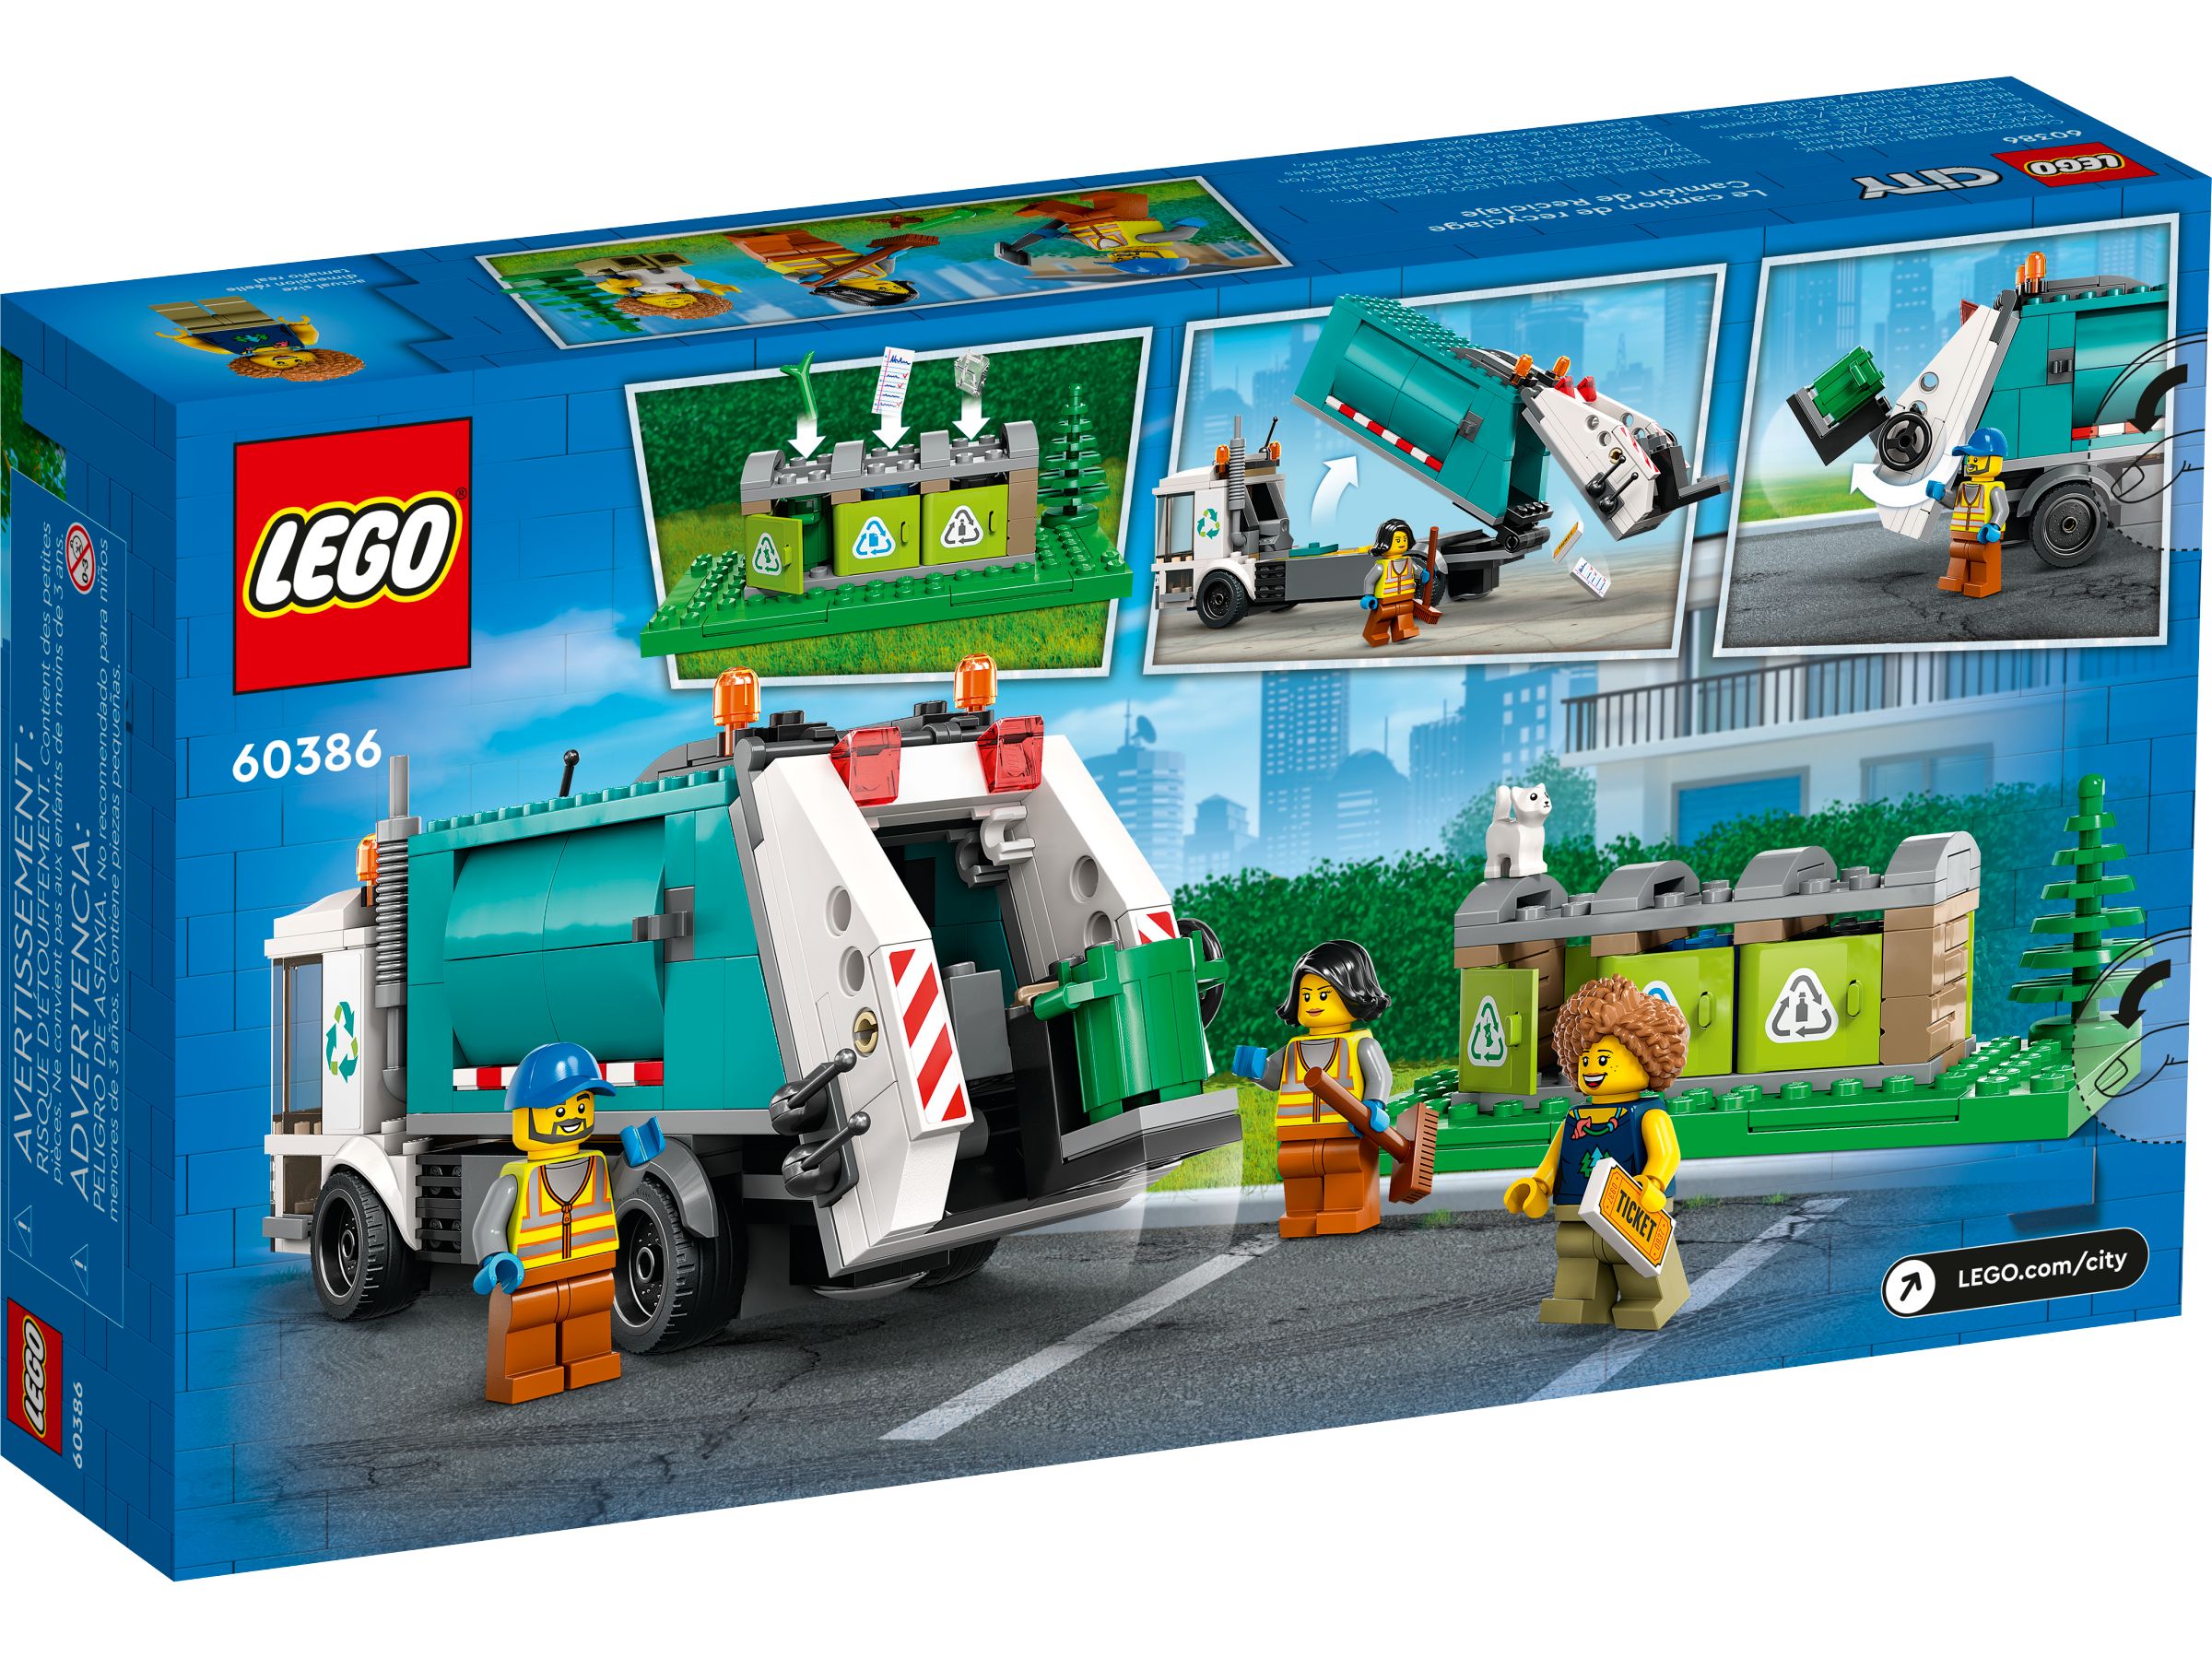 LEGO City 60386 Müllabfuhr LEGO_60386_alt8.jpg